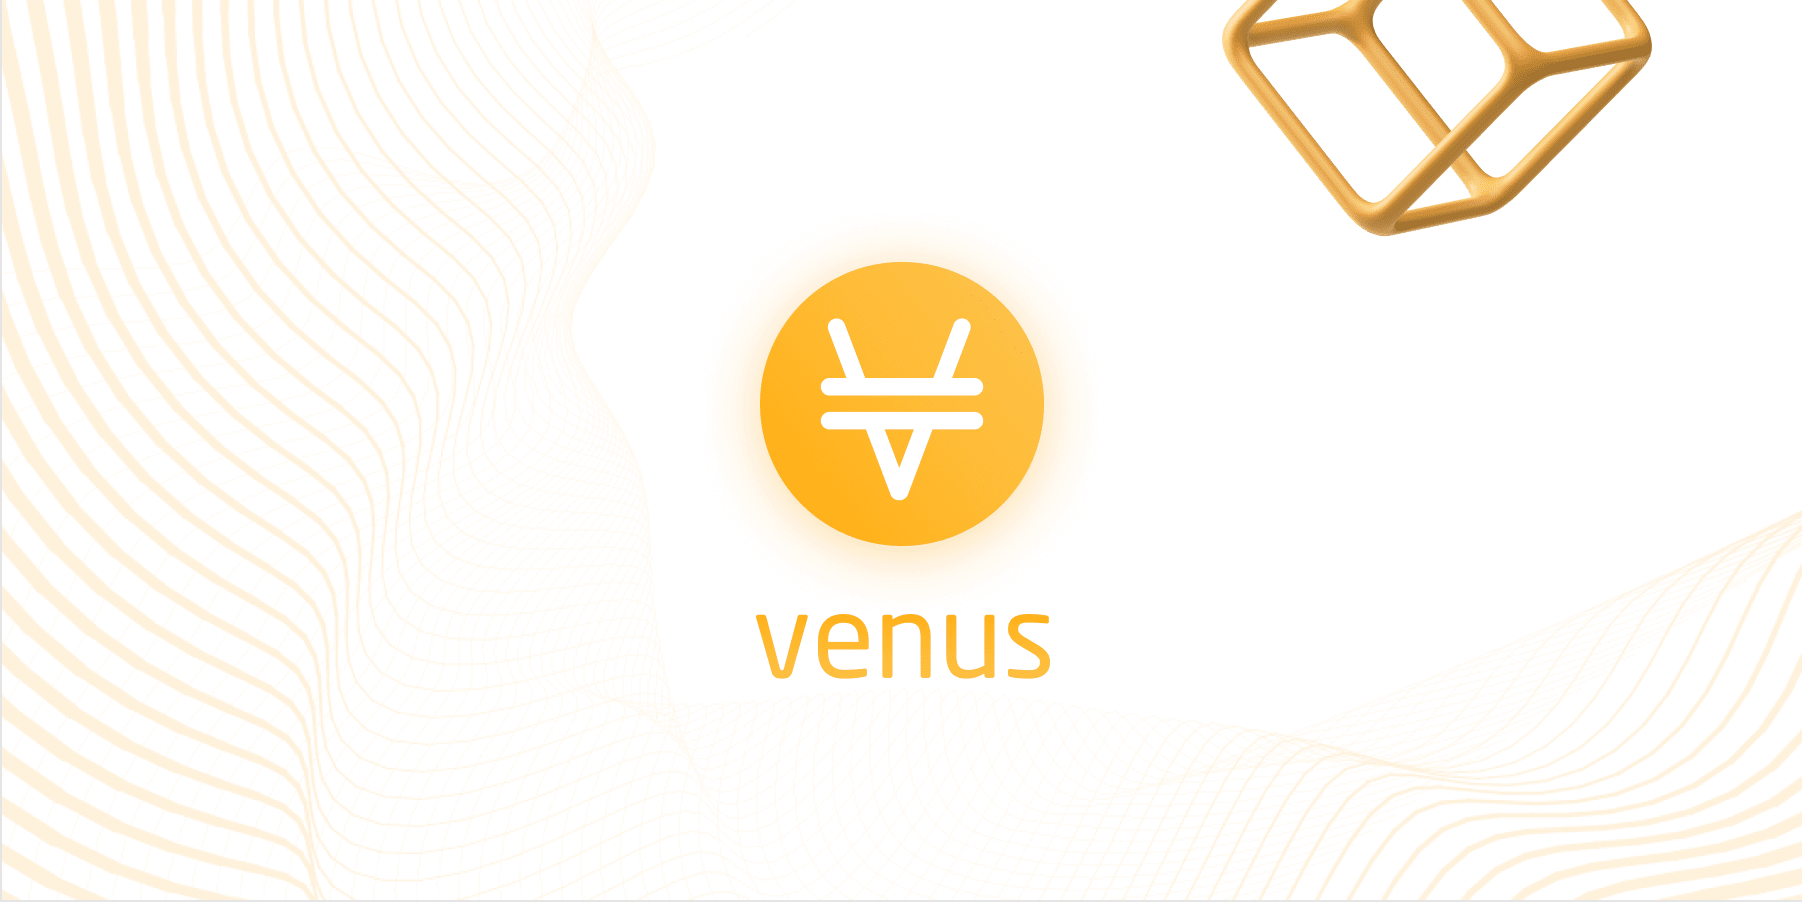 Venüs Protokolü'nün Kullanım Alanları